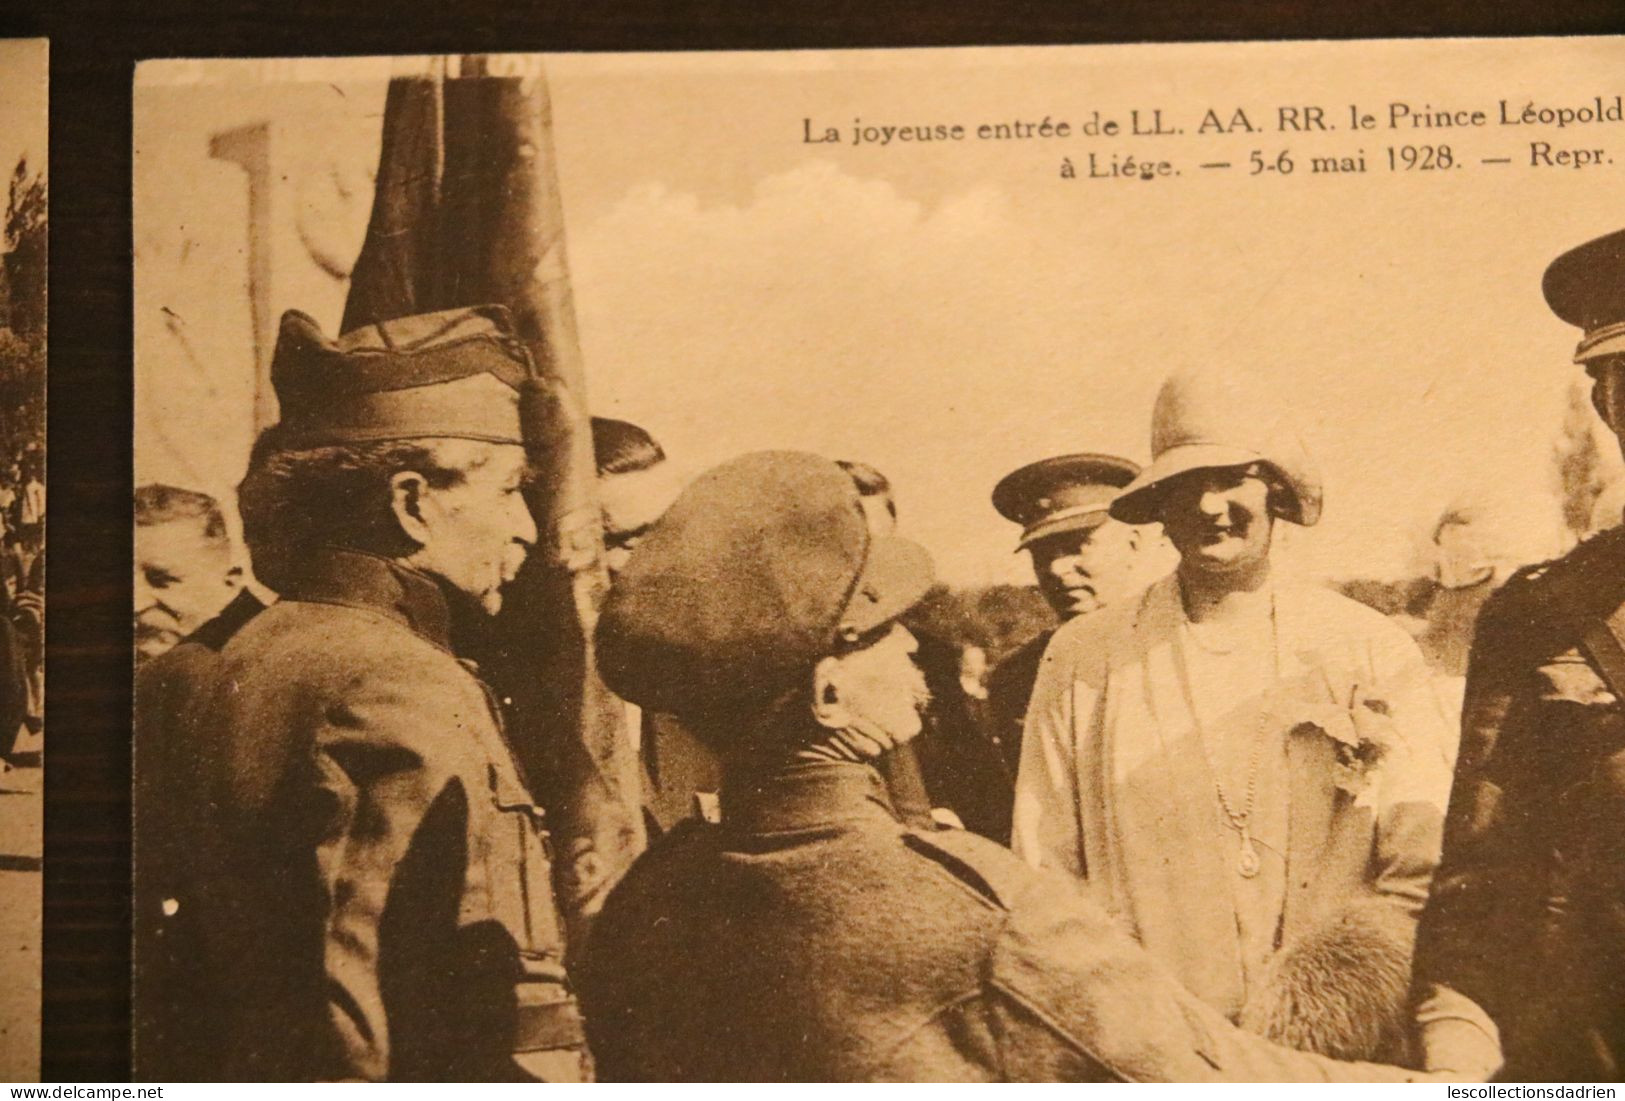 Lot de 9 cartes postales joyeuse entrée de Léopold III (prince) et Astrid à Liège le 5-6 mai 1928  - Luik